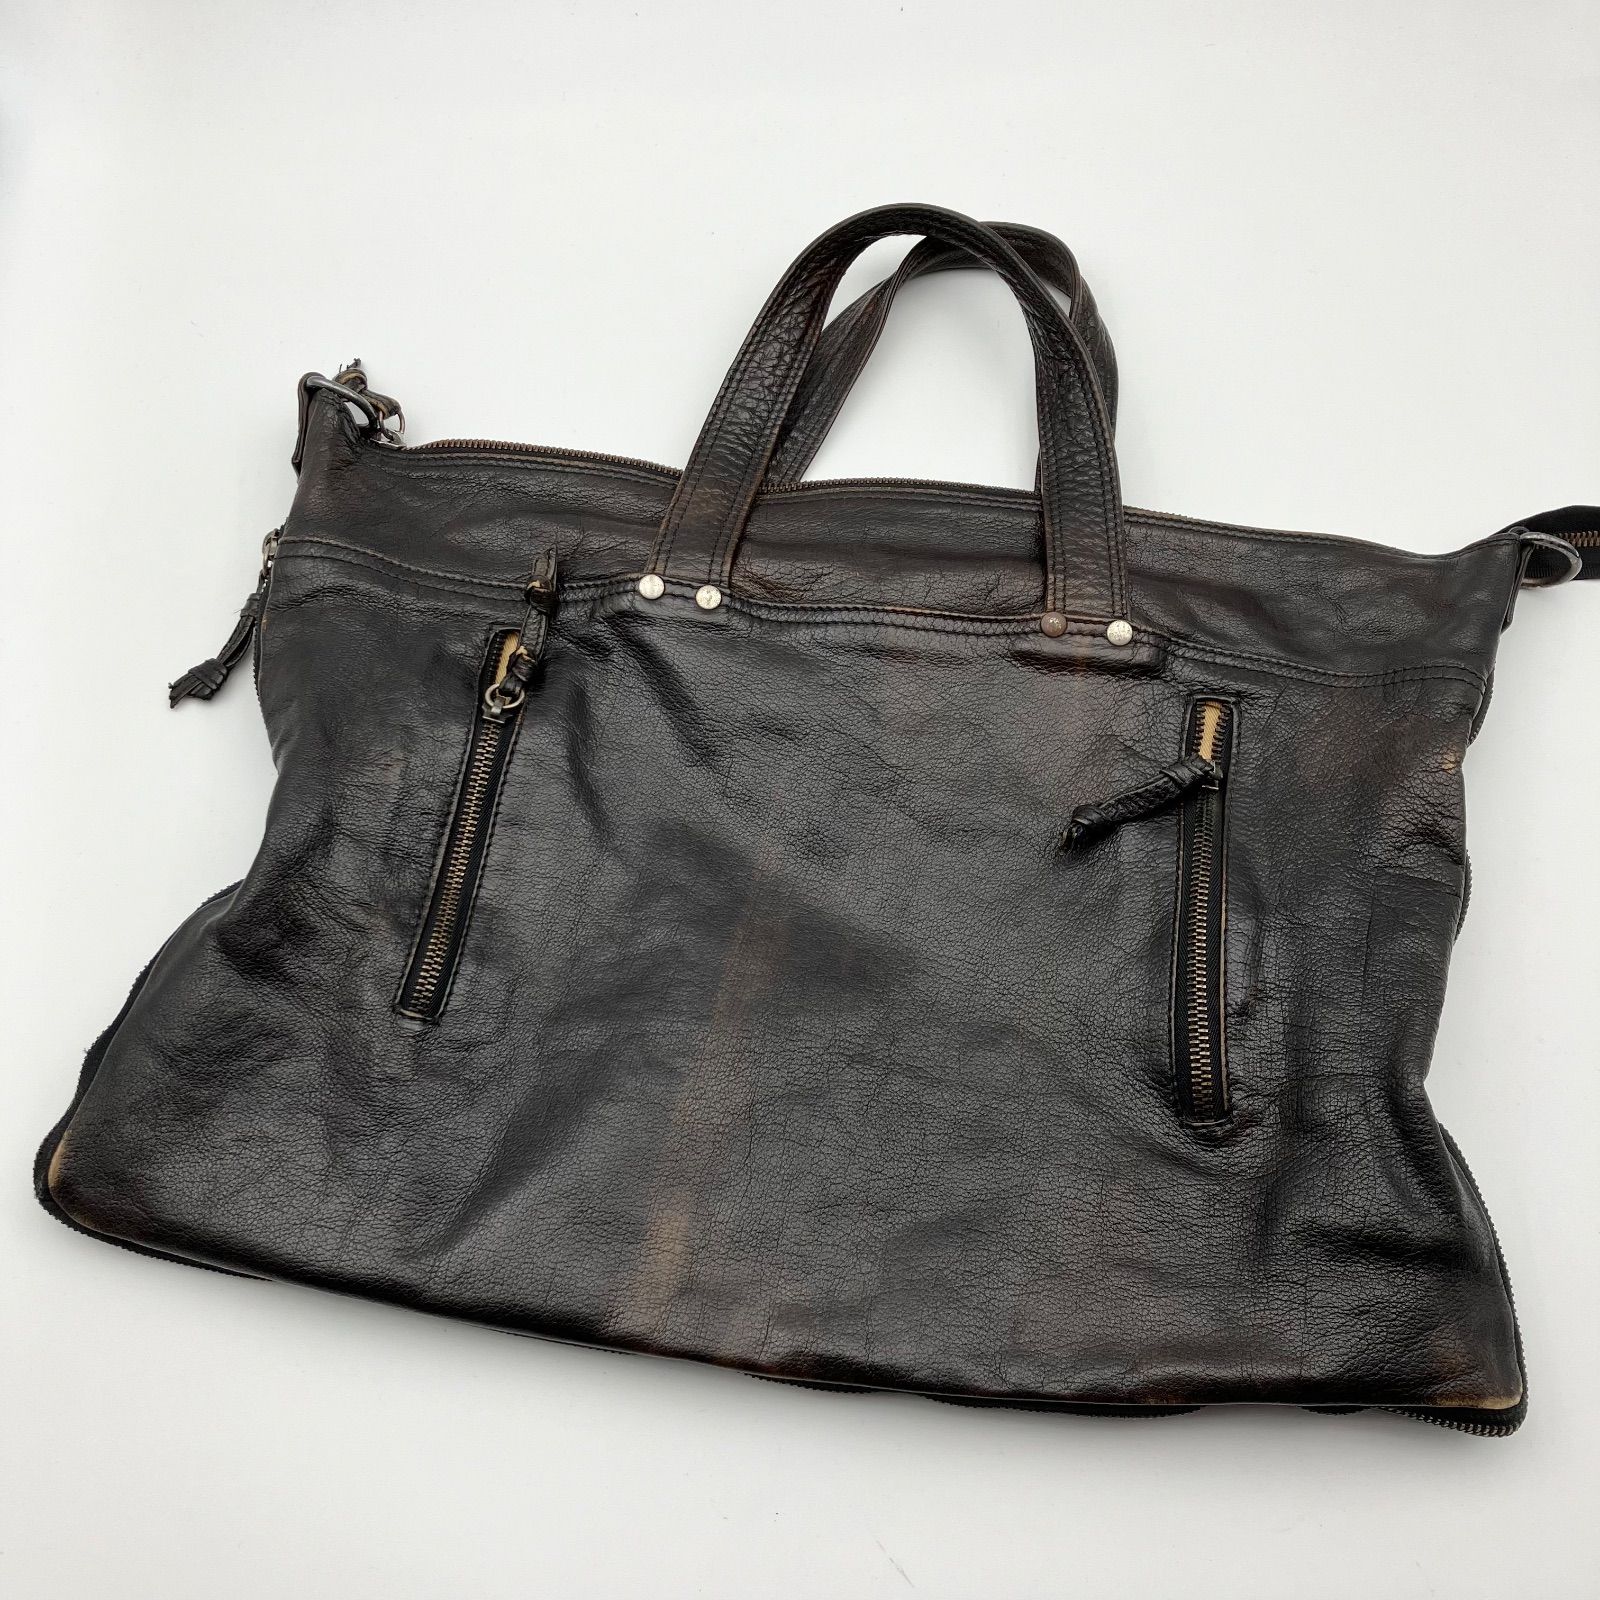 officine creative オフィチーネクリエイティブ レザー 本革 トートバッグ バッグ カバン 鞄 BAG メンズ ブラック 黒  SG77-19 - メルカリ